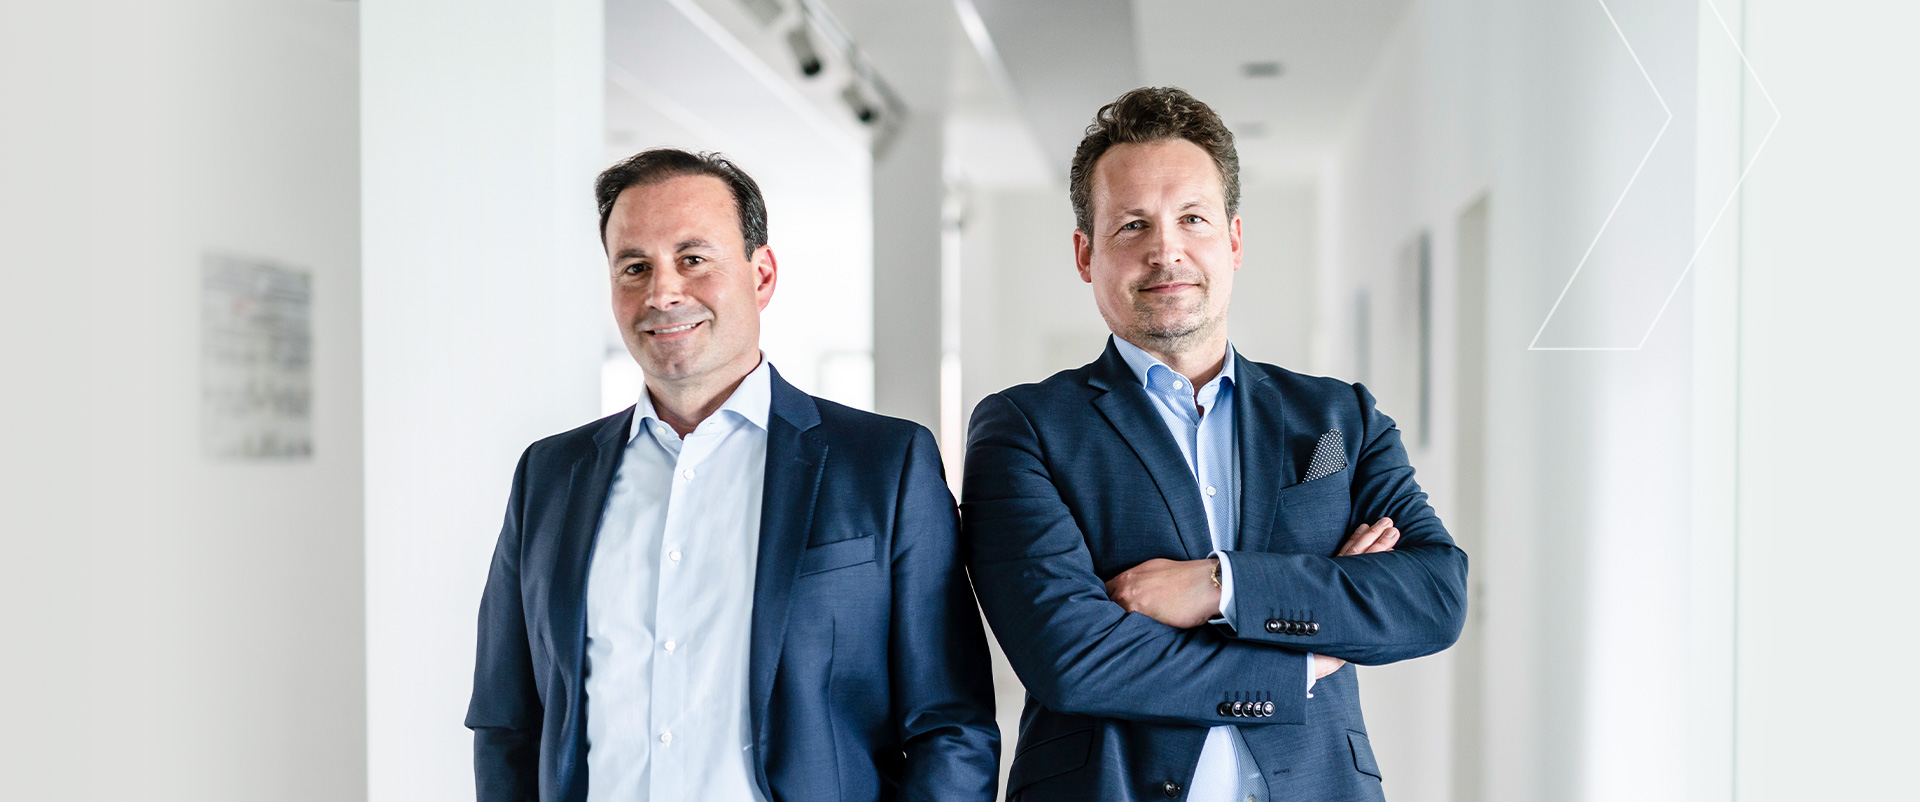 RME | Retail Management Expertise Asset & Property Management GmbH | Geschäftsführung: Mark Roth (links), Ronny Dawid (rechts)